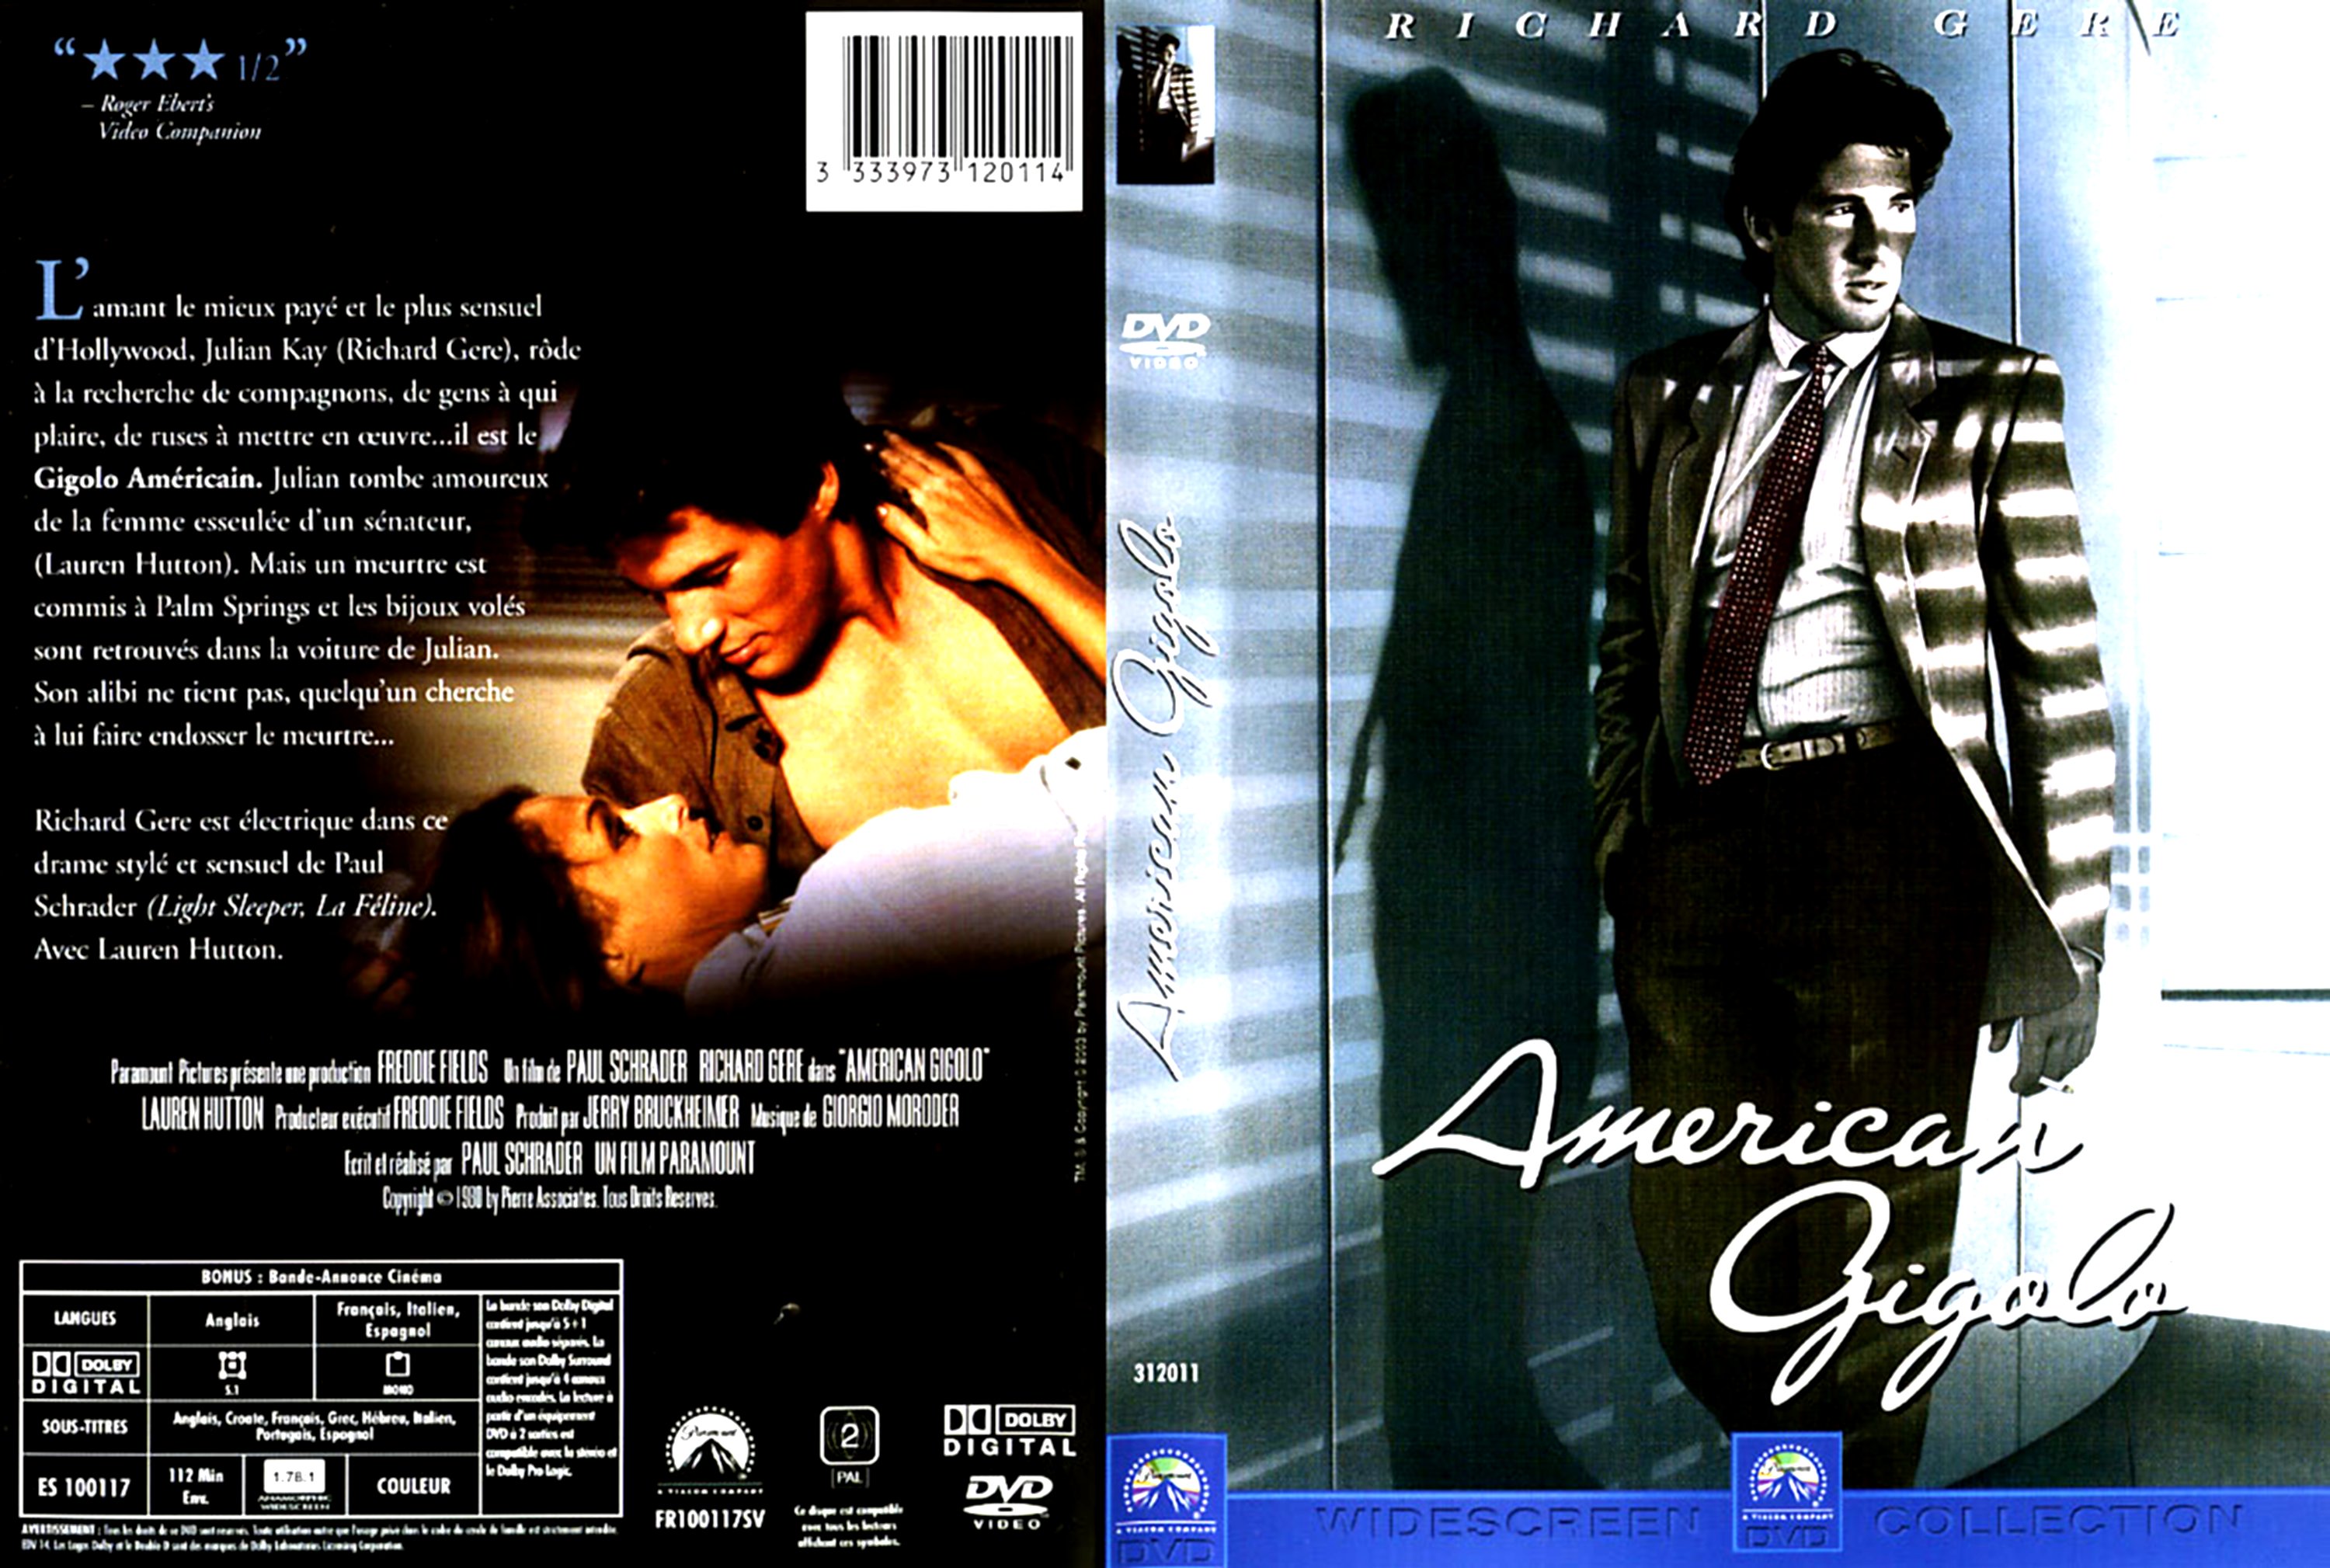 Jaquette DVD American Gigolo